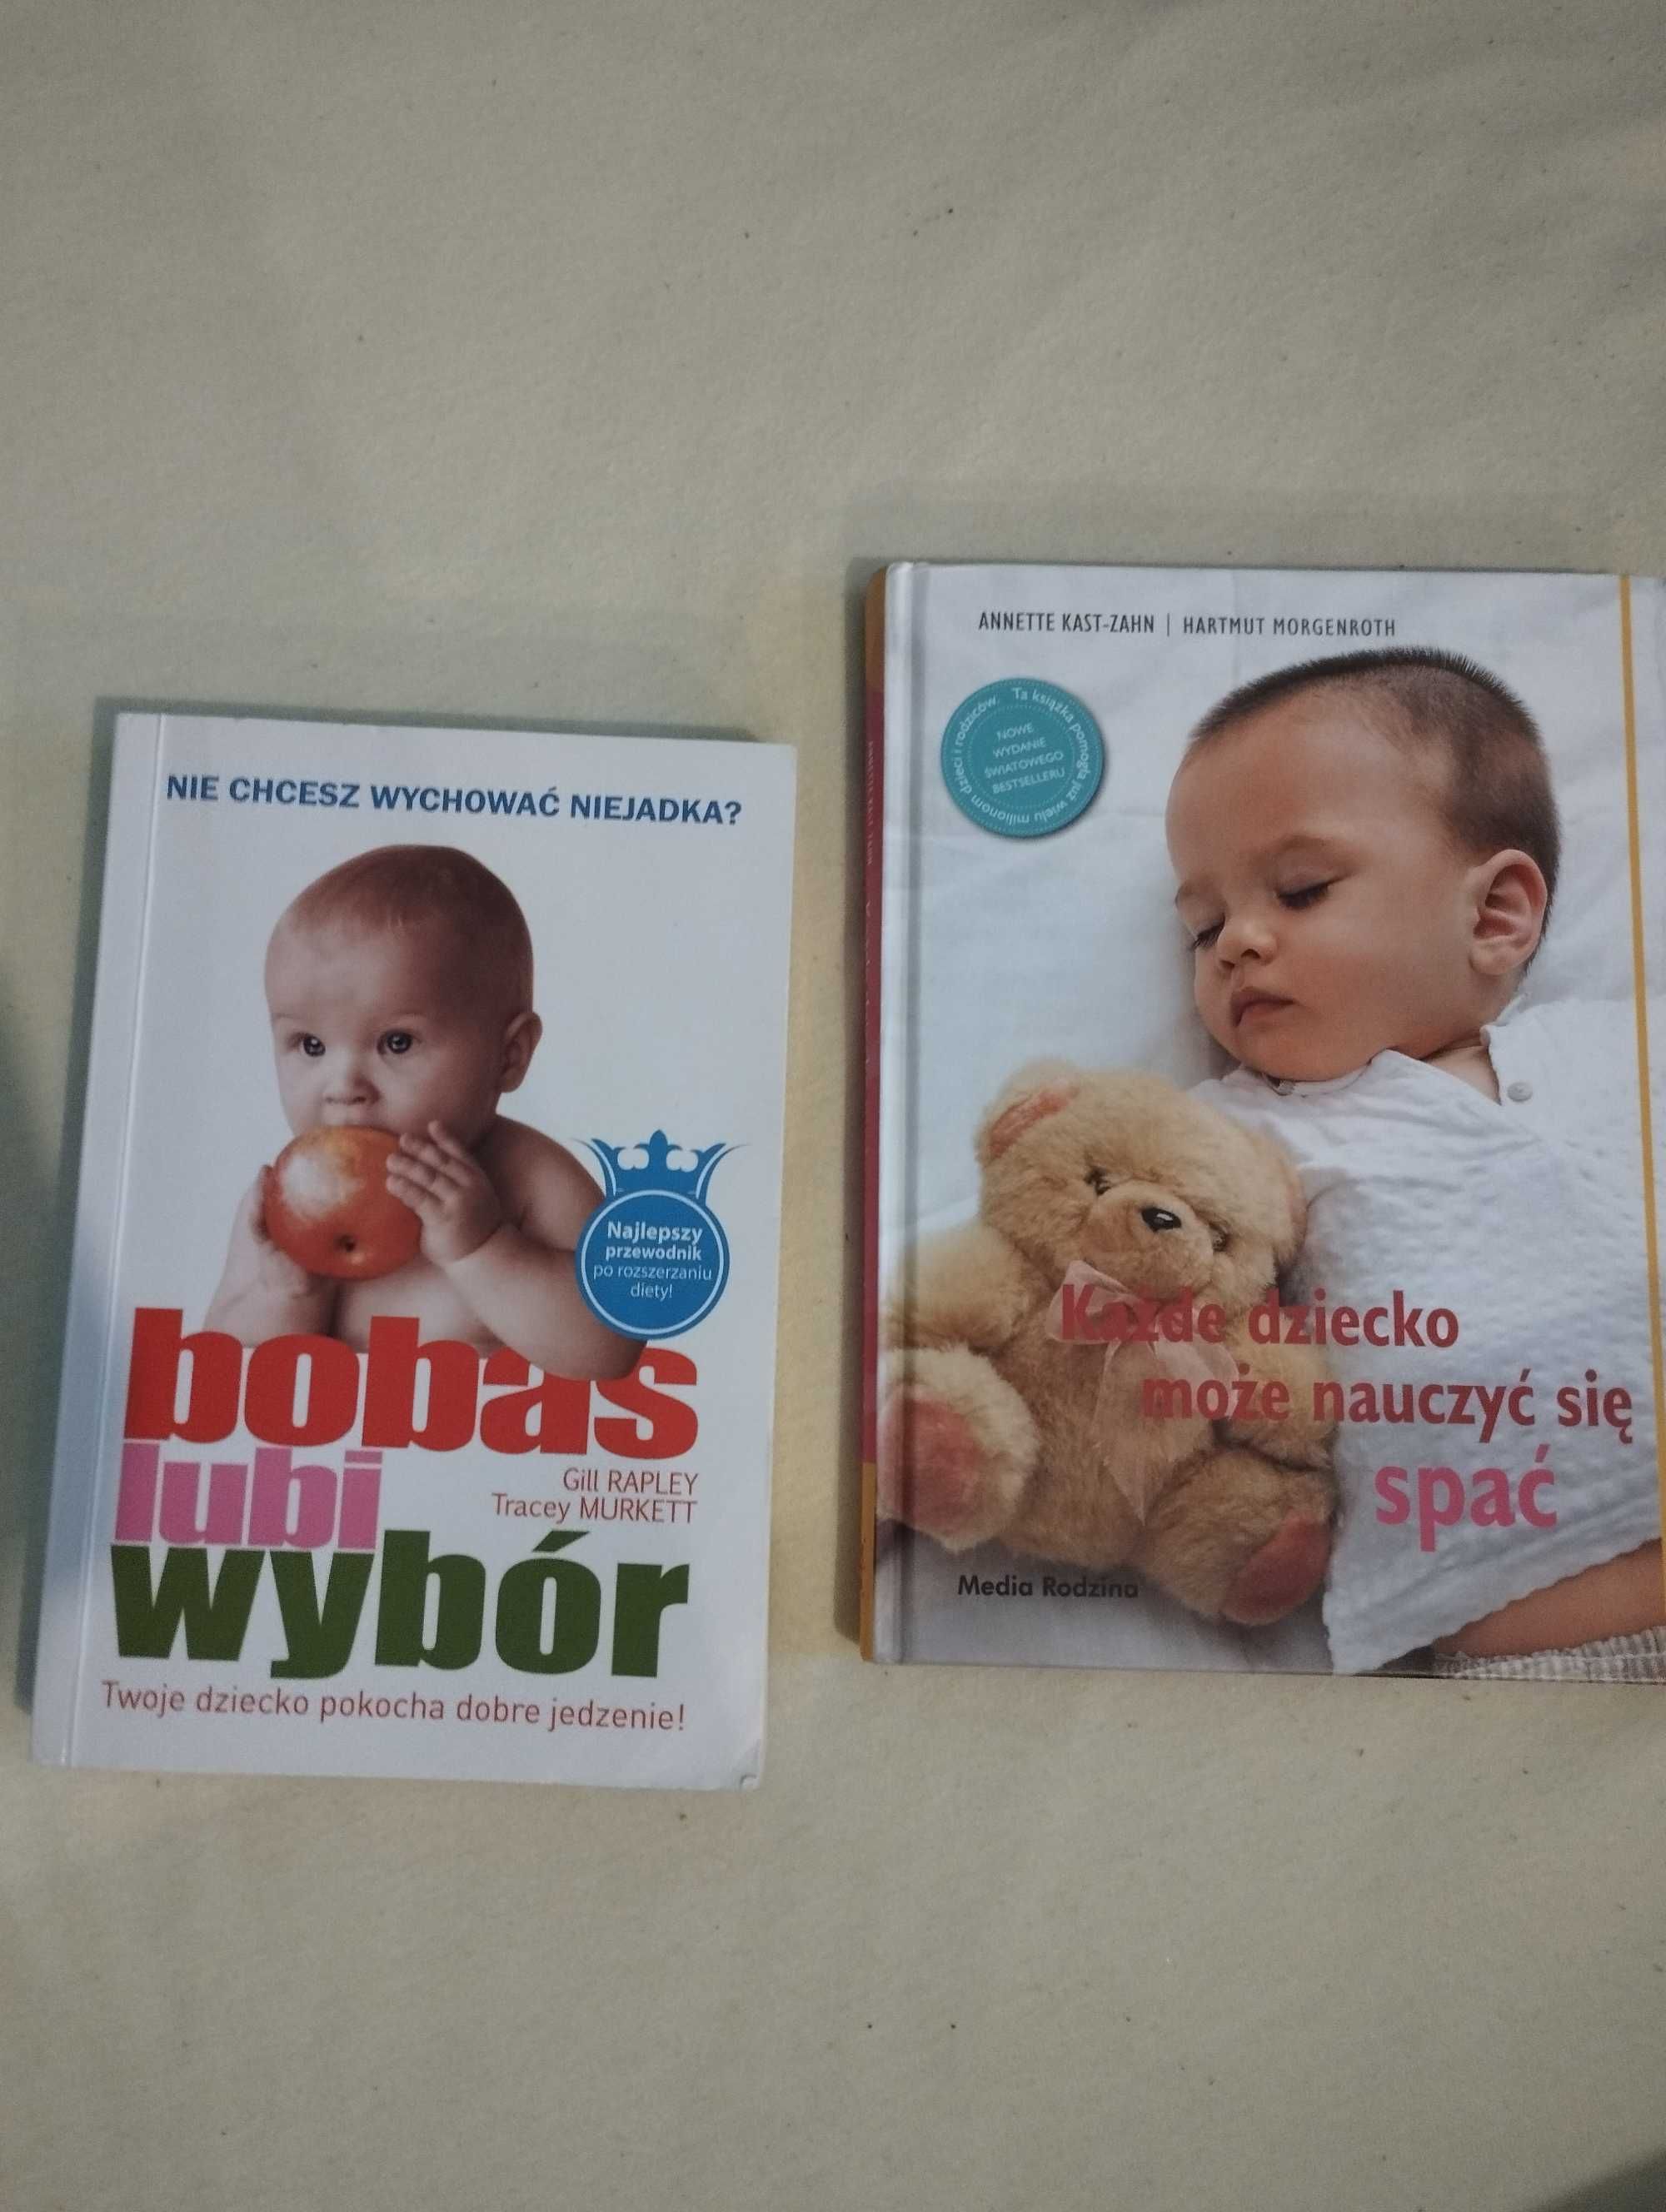 Książka bobas lubi wybór i każde dziecko może nauczyć się spać